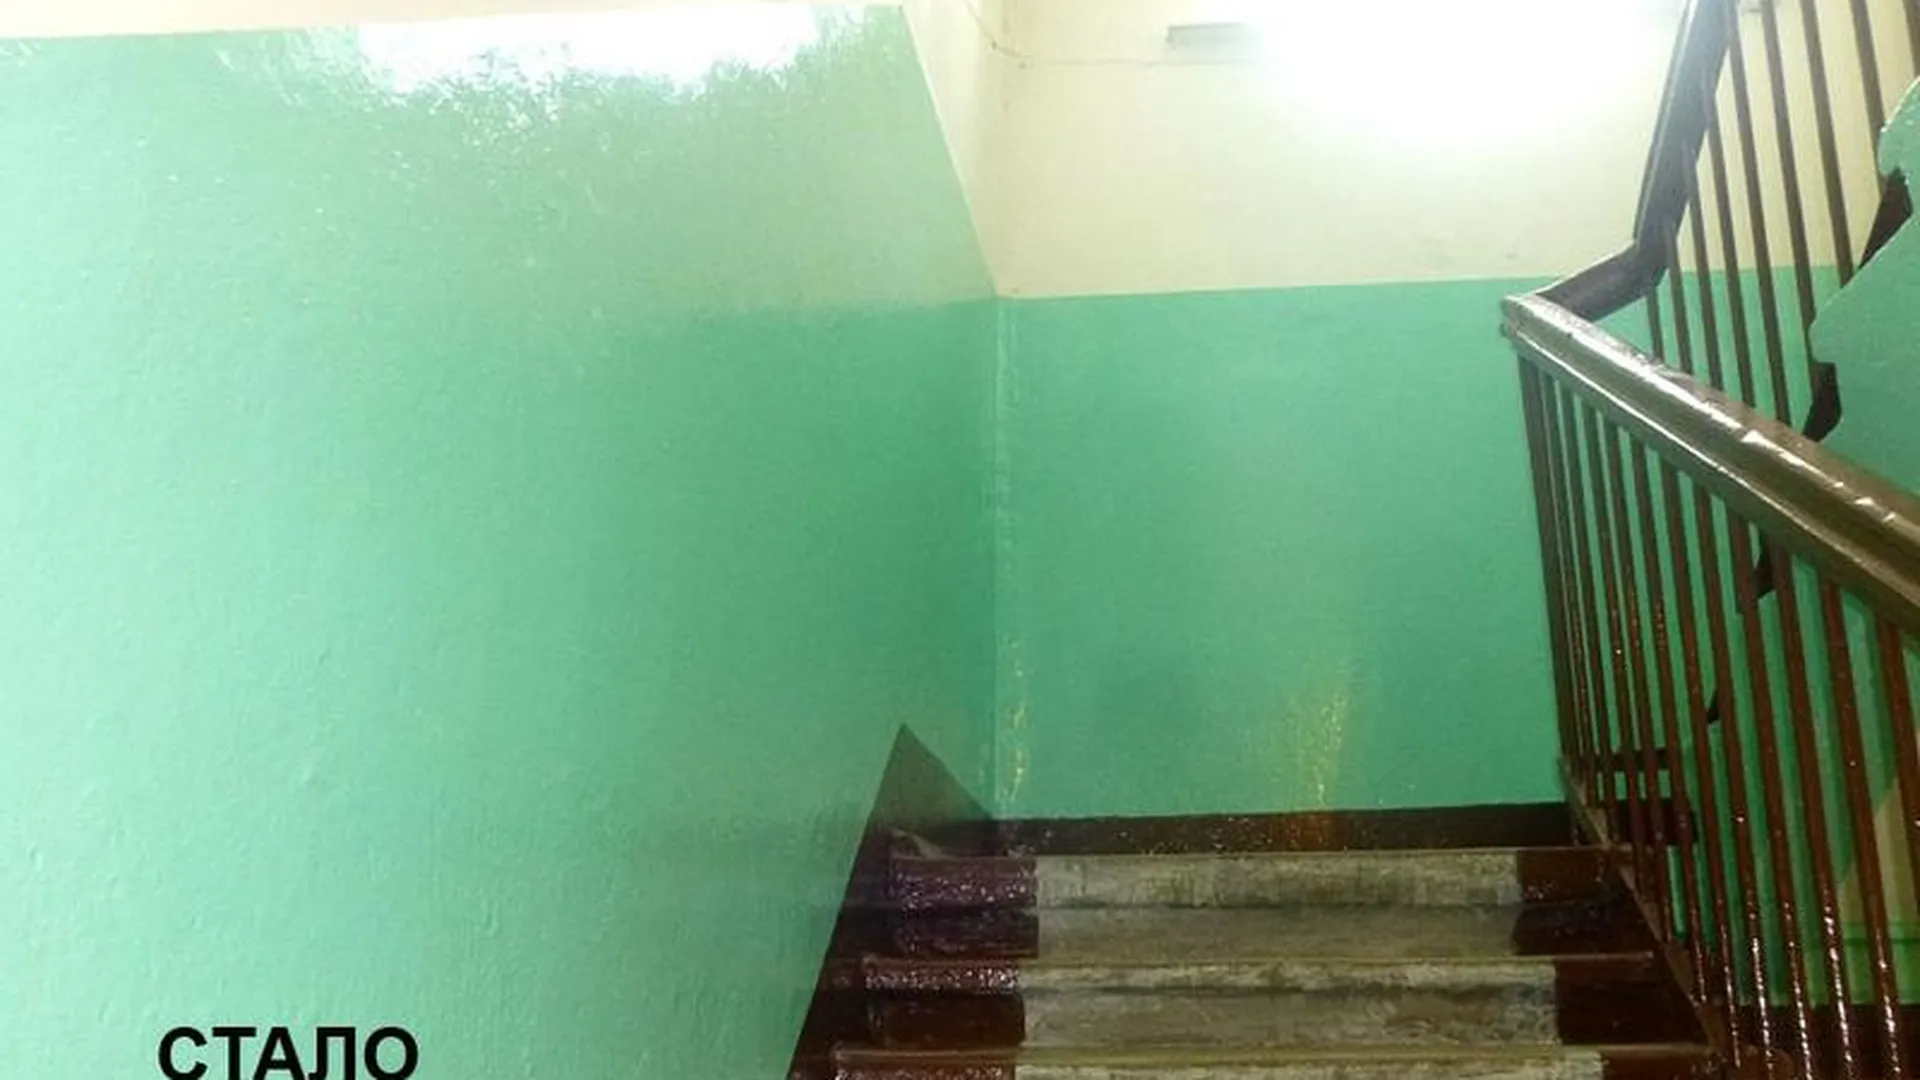 УК в Можайске заставили закончить ремонт дома, тянувшийся целый год